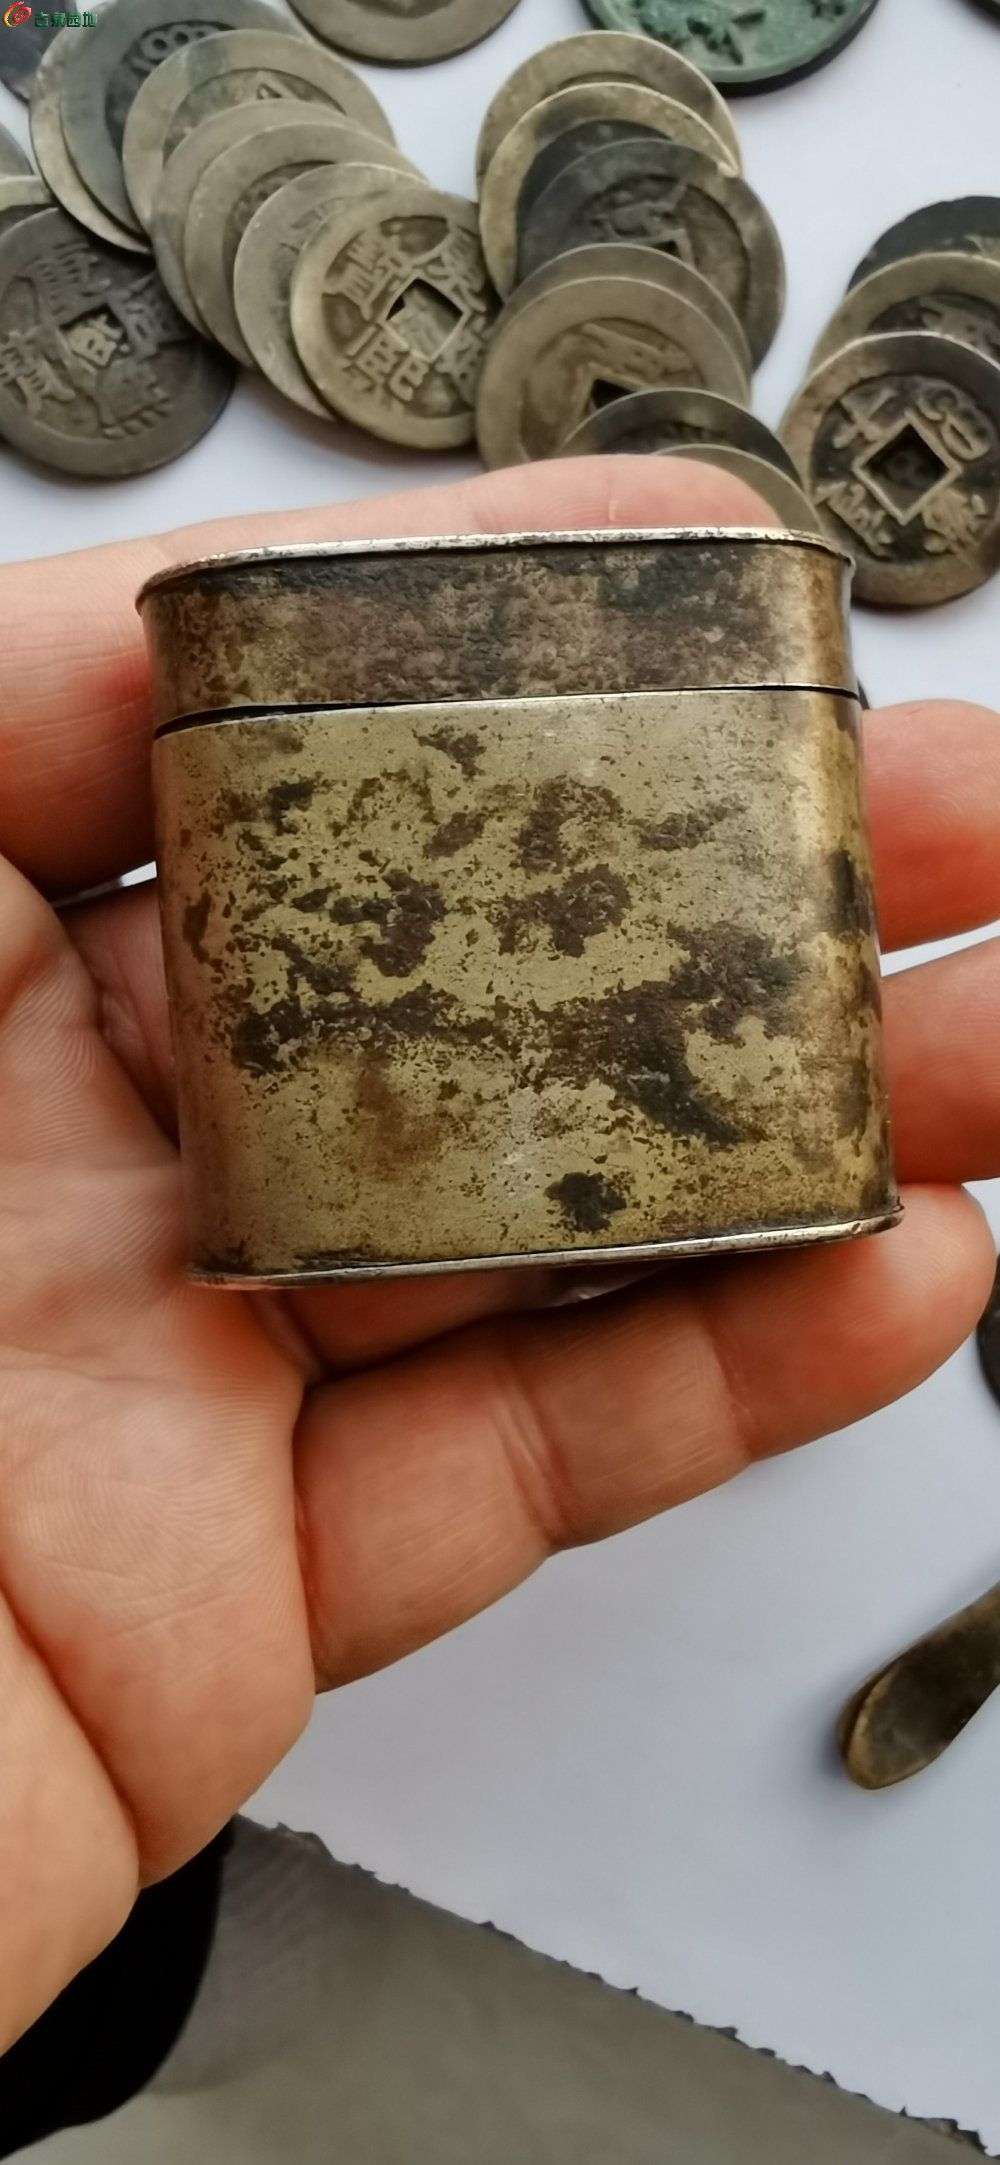 03漂亮铜烟膏盒1个